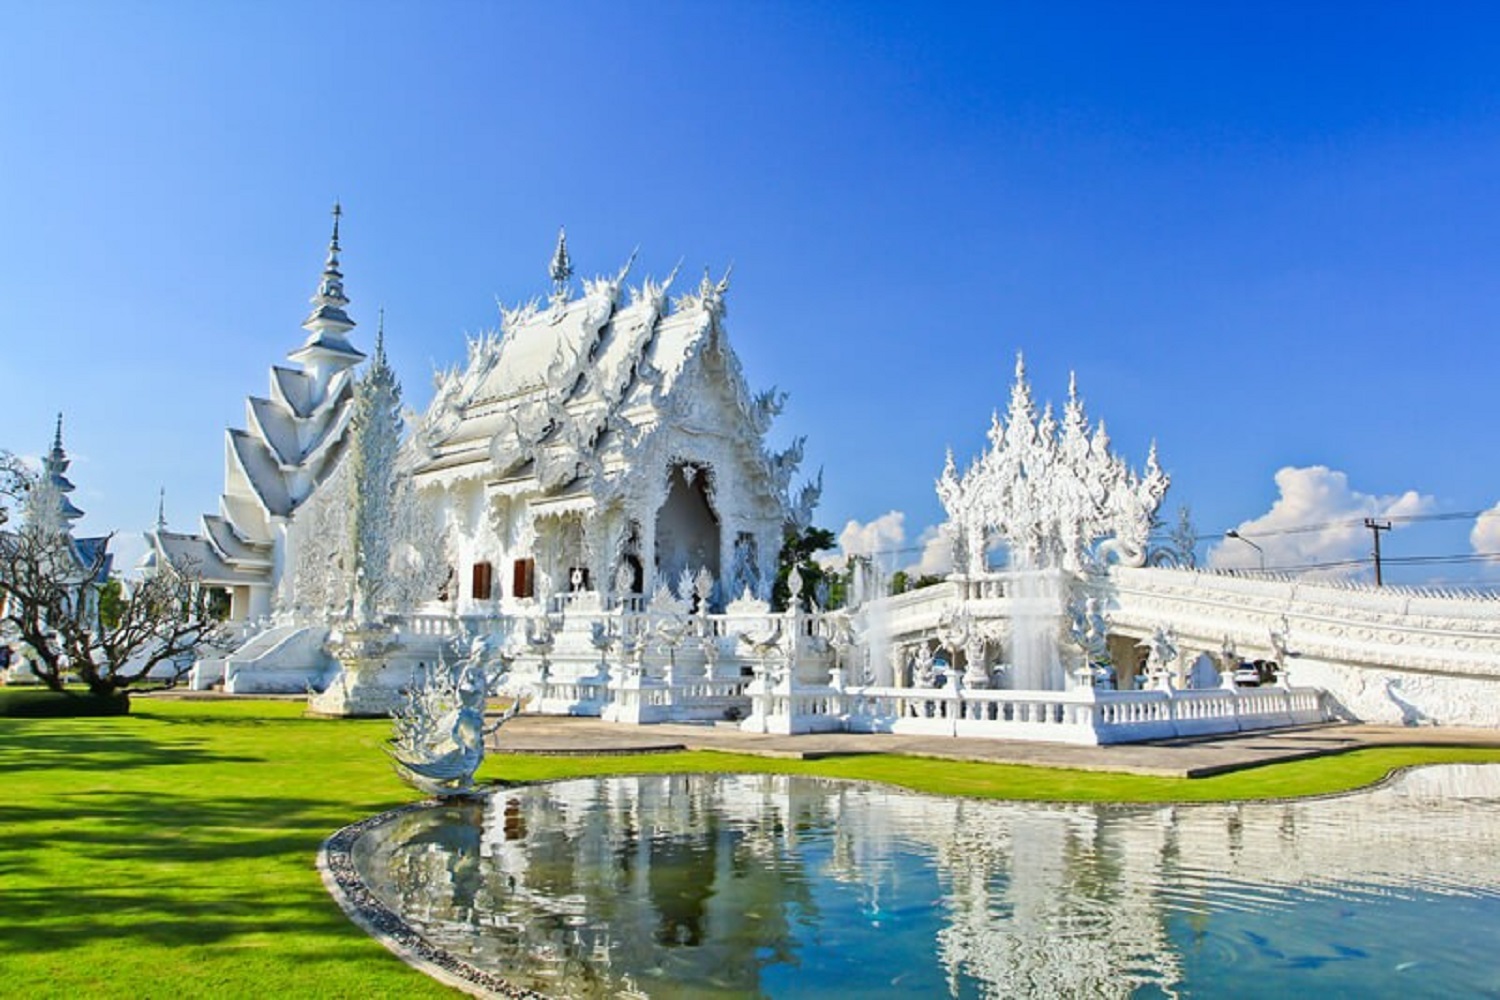 Tour du lịch Thái Lan giá rẻ: Chiang Mai - Chiang Rai